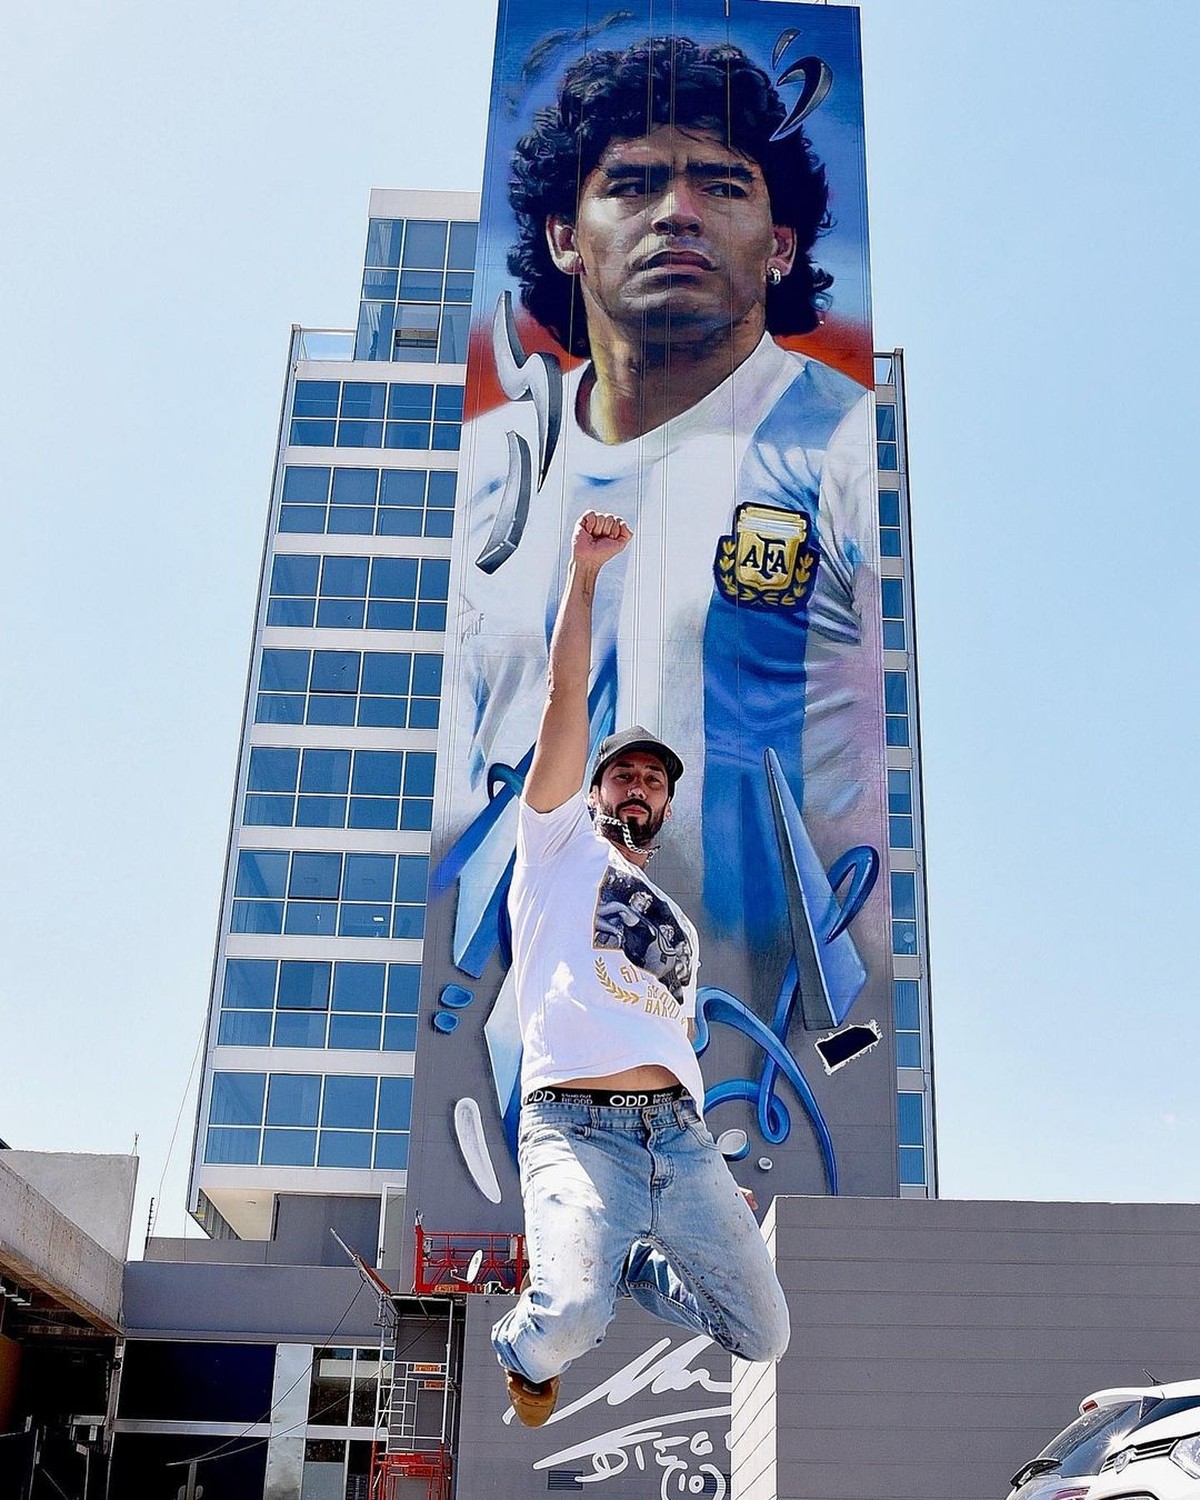 Novo mural gigante celebra o 'guerreiro' Maradona em Buenos Aires